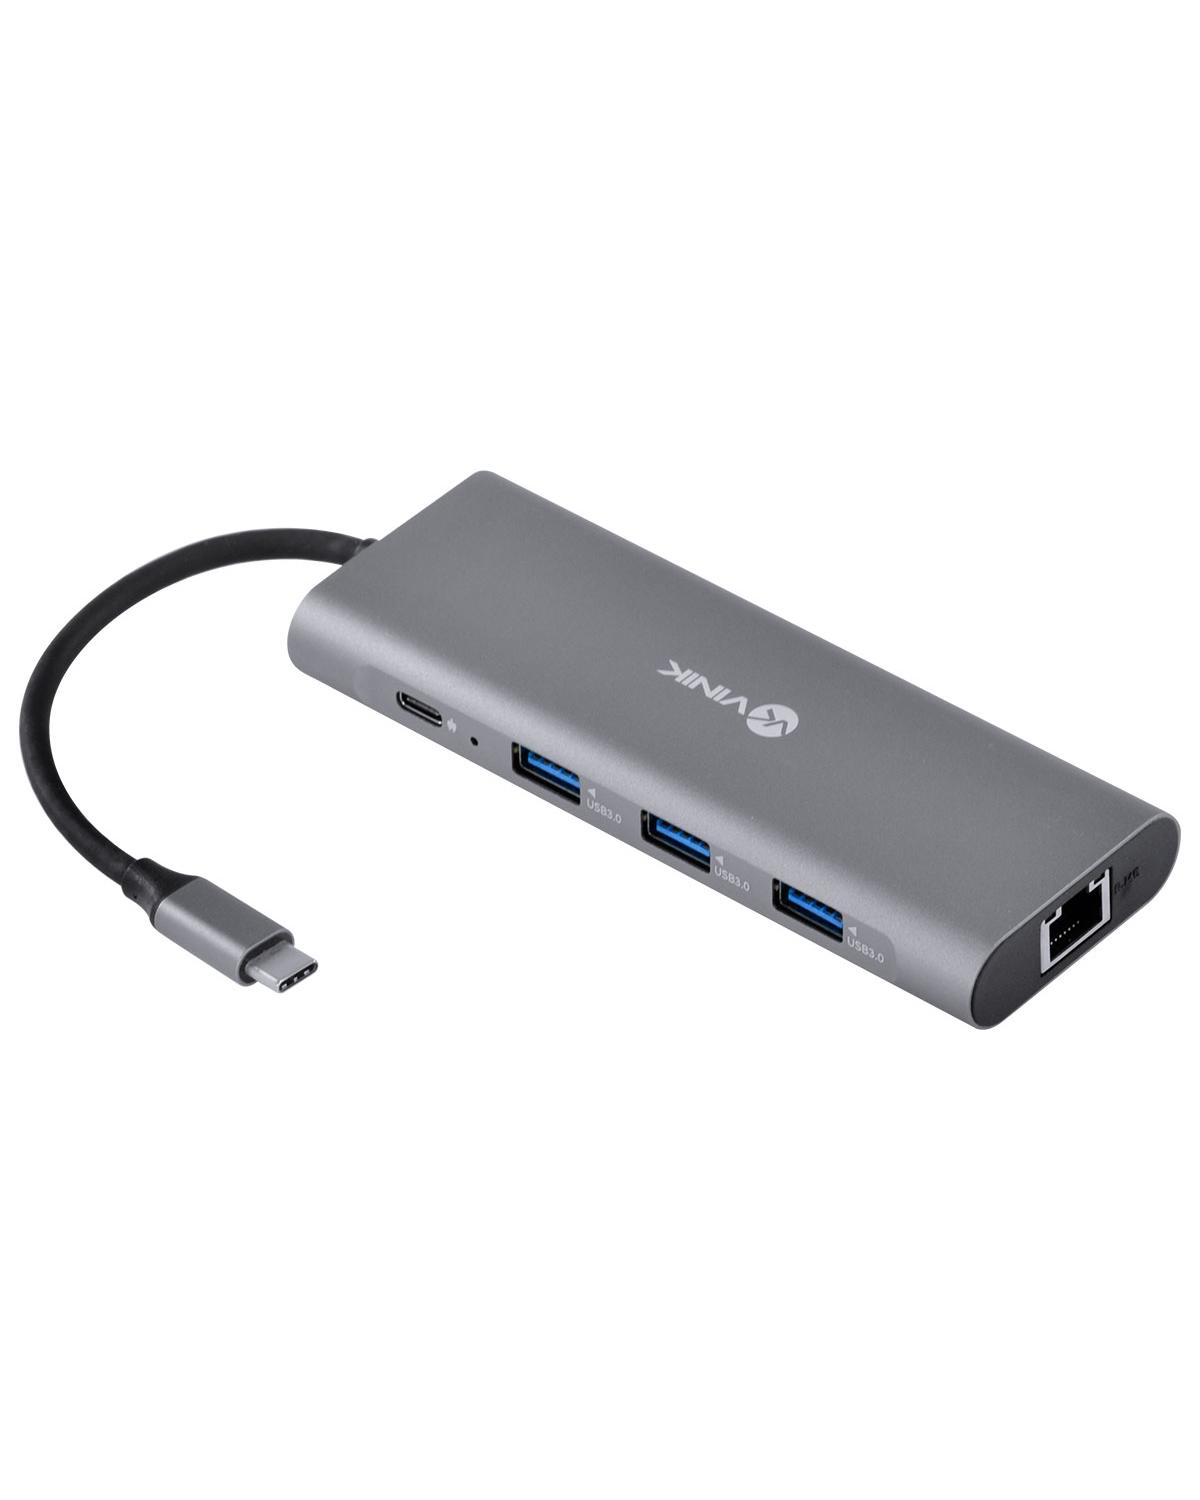 HUB USB TIPO C TYPE C 9 EM 1 - 3 USB 3.0 + CARTÃO SD E TF + HDMI + ÁUDIO P2 + RJ45 + POWER DELIVERY (PD) 60W - HC-9